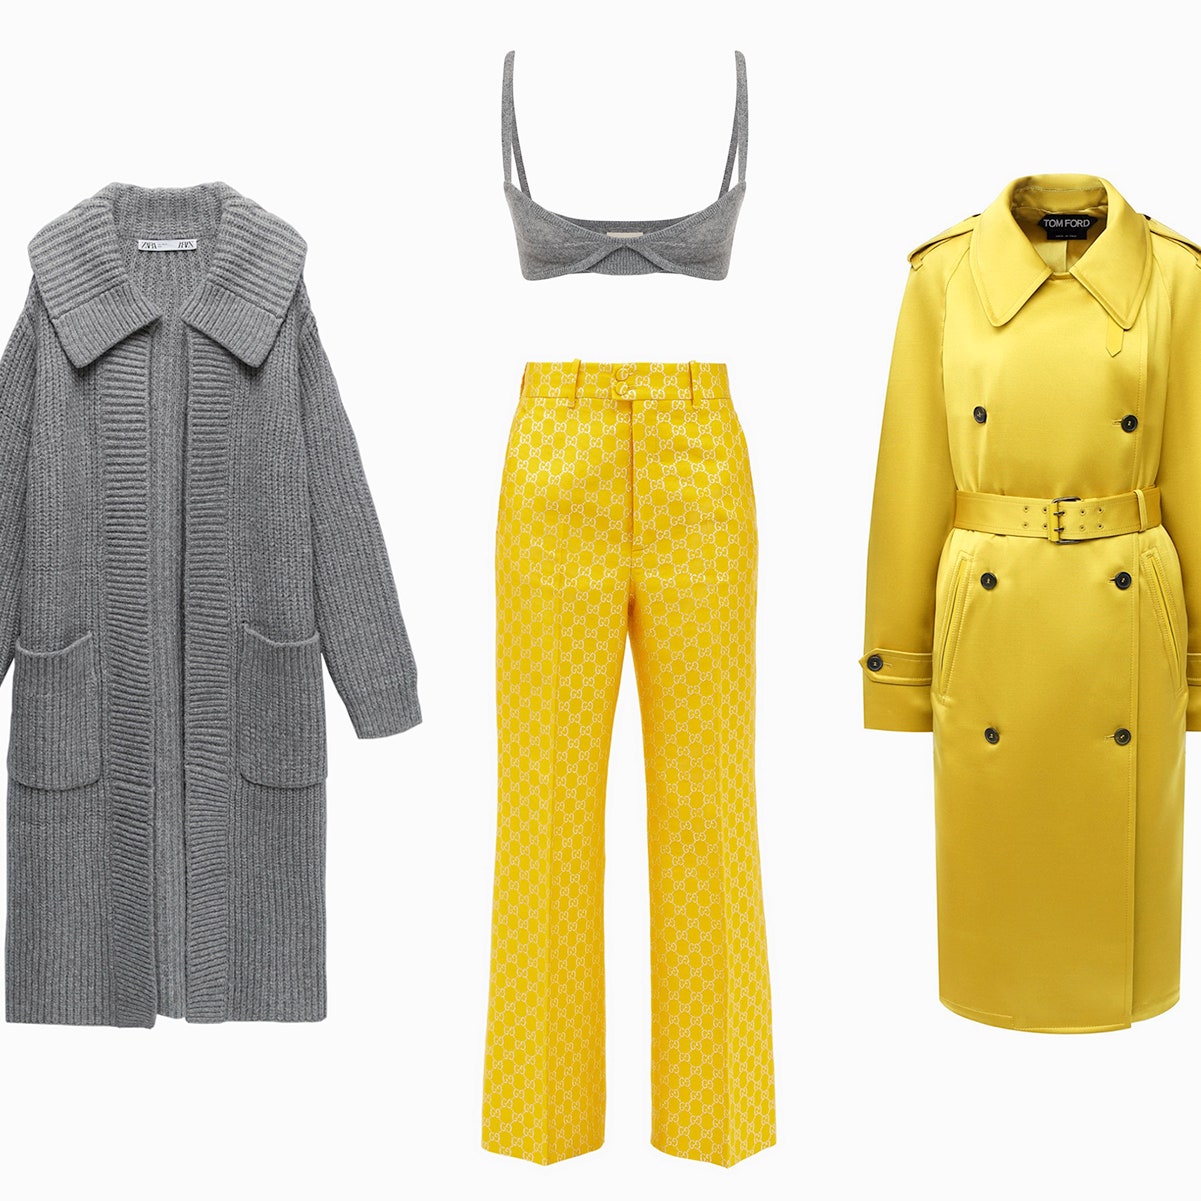 Топы, брюки, юбки и пальто в главных цветах Pantone 2021 &- желтом и сером